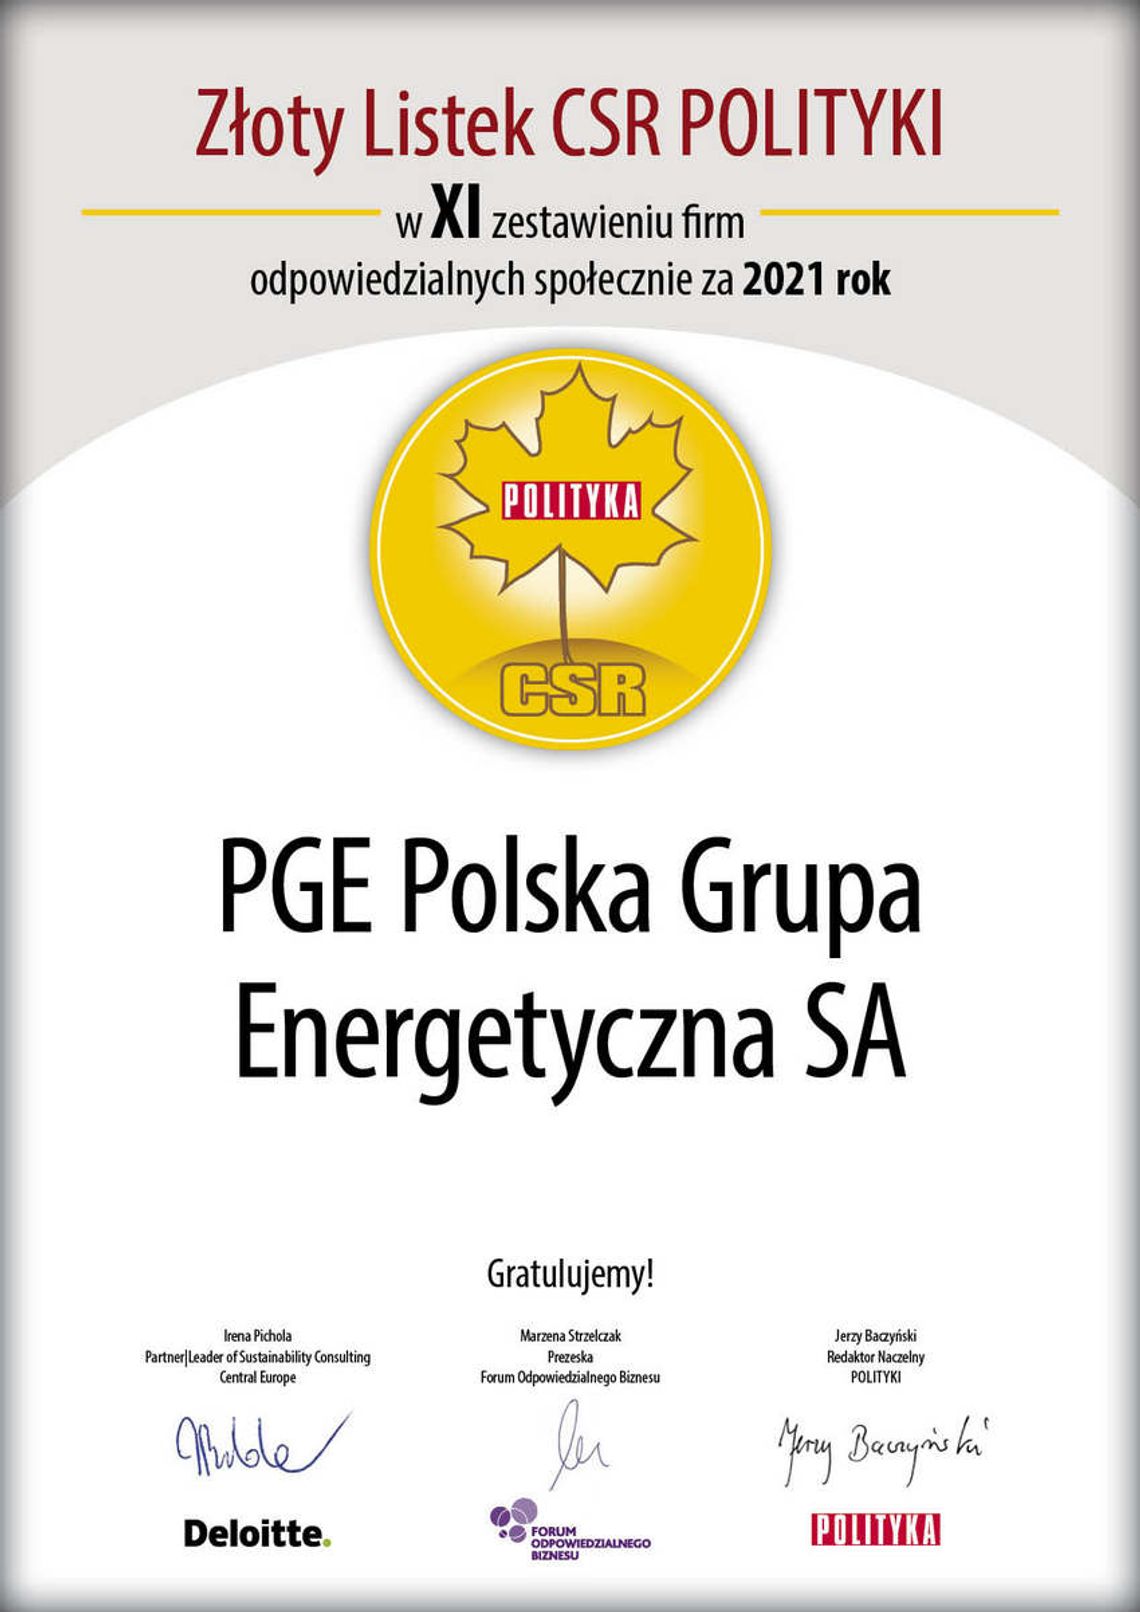 PGE uhonorowana Złotym Listkiem CSR POLITYKI